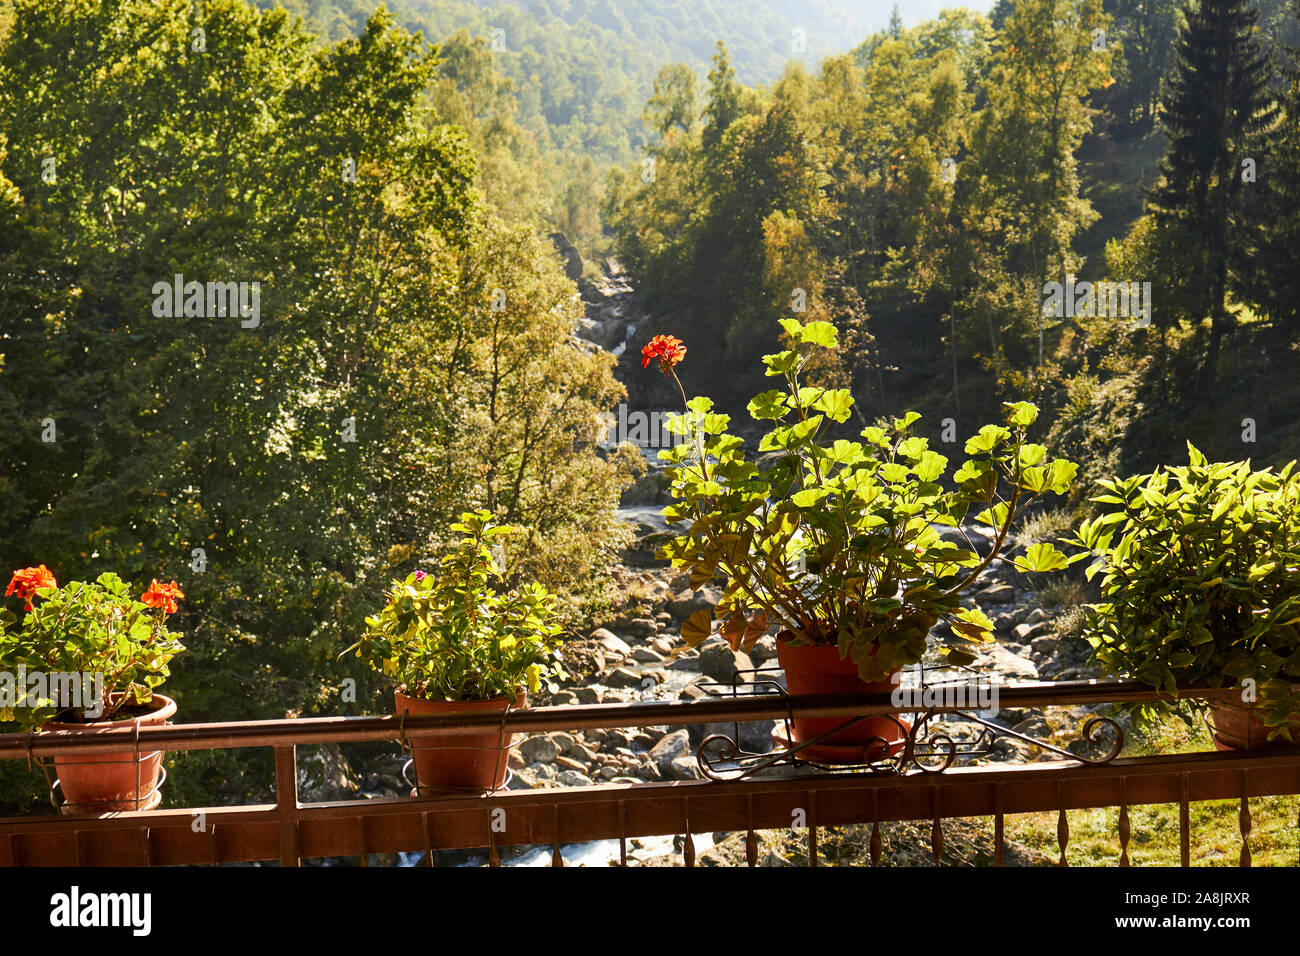 Una veranda giardino fiorito affacciato sul Maratime Alpi vicino a Valdieri, Cuneo, Piemonte, Italia Foto Stock